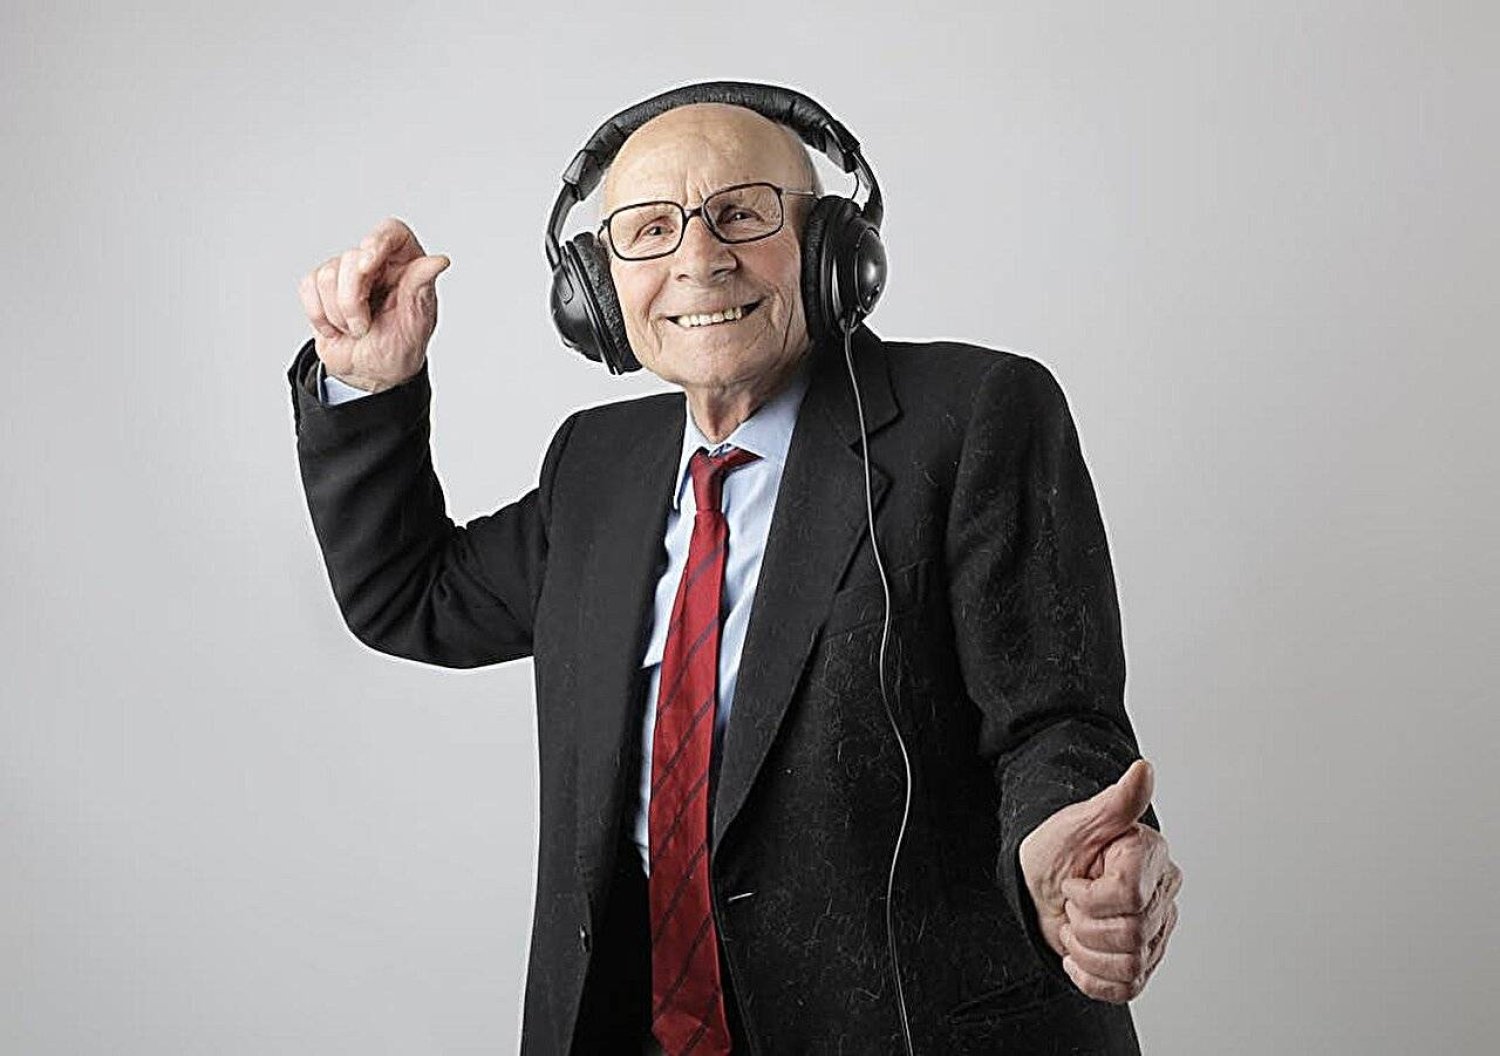 الاستماع إلى الموسيقى يُنشّط مناطق الدماغ المرتبطة بالمكافأة (بيكسلز)